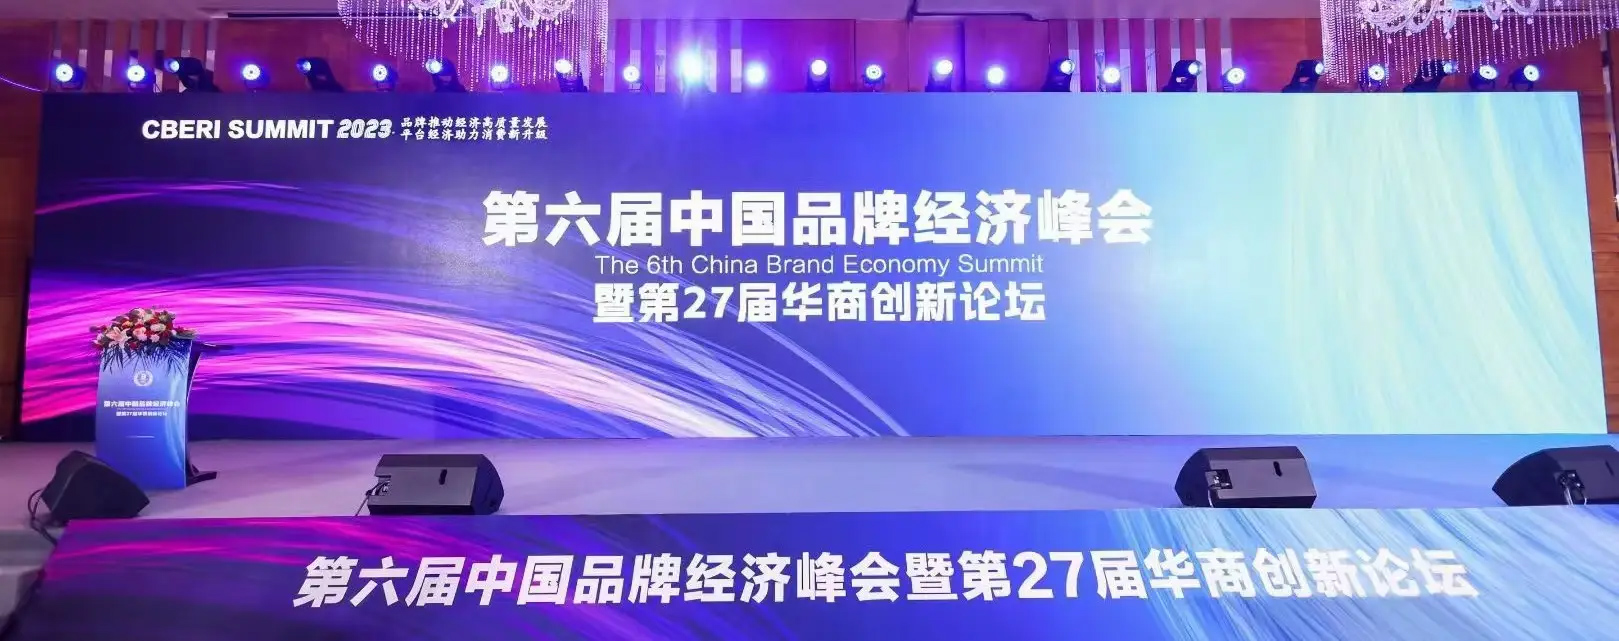 企业战略顶层设计专家千海受邀中国品牌经济峰会分享企业品牌战略